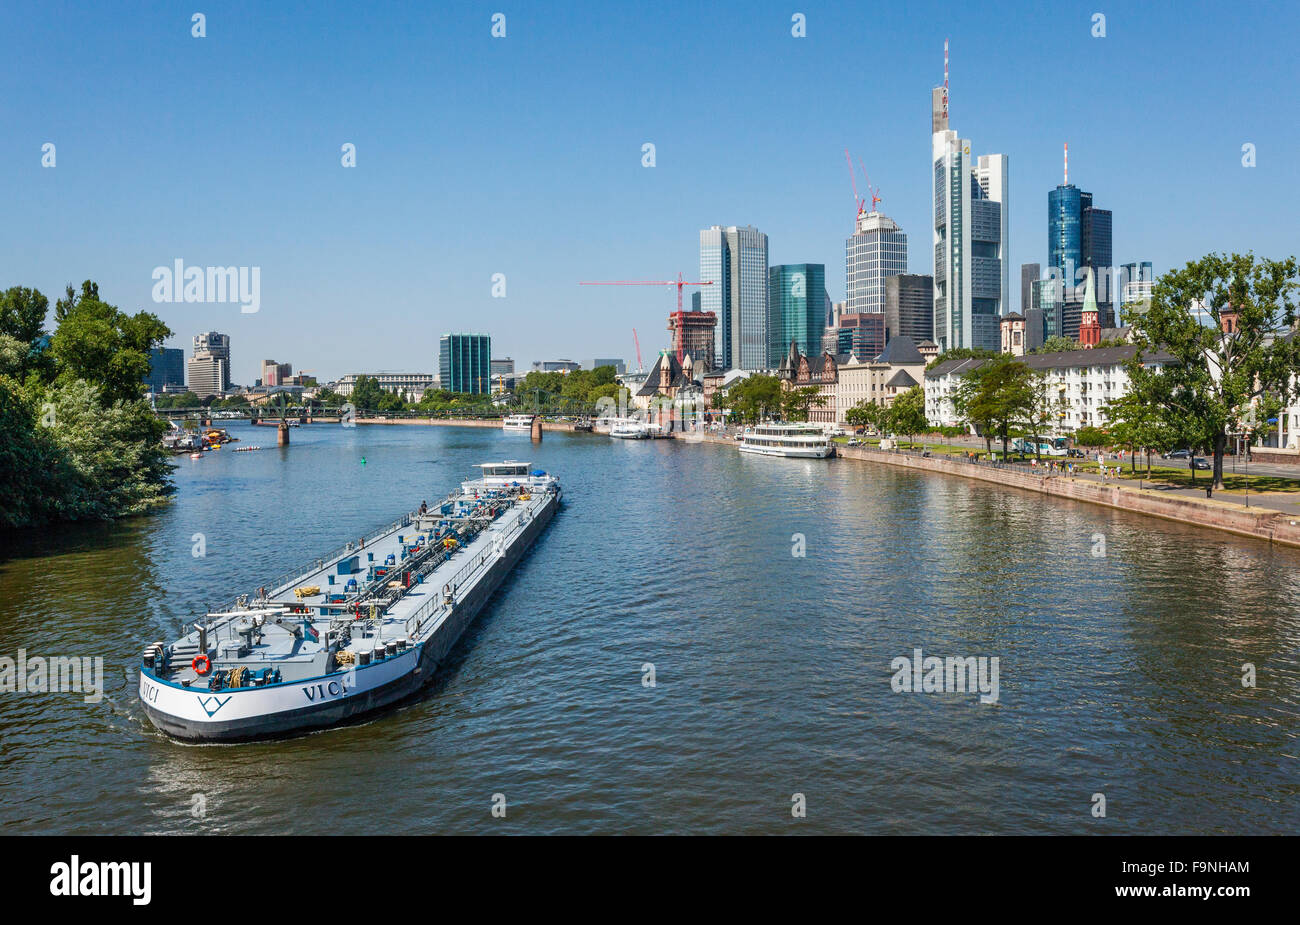 Deutschland, Hessen, Frankfurt Am Main, holländische Tankschiff "Vici" vorbei an der Main-Insel während der Navigation des Mains Stockfoto